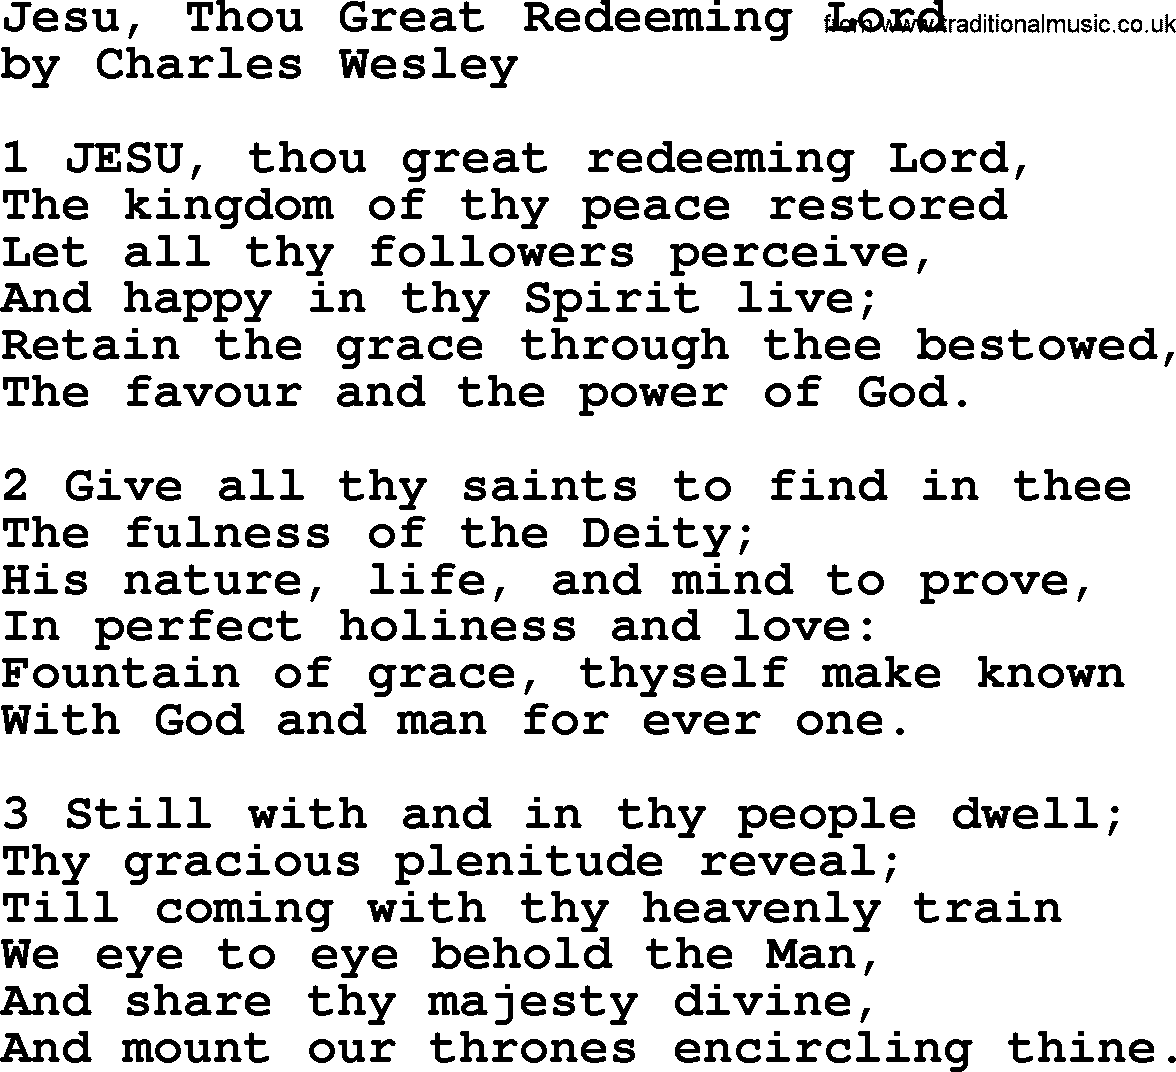 Charles Wesley hymn: Jesu, Thou Great Redeeming Lord, lyrics